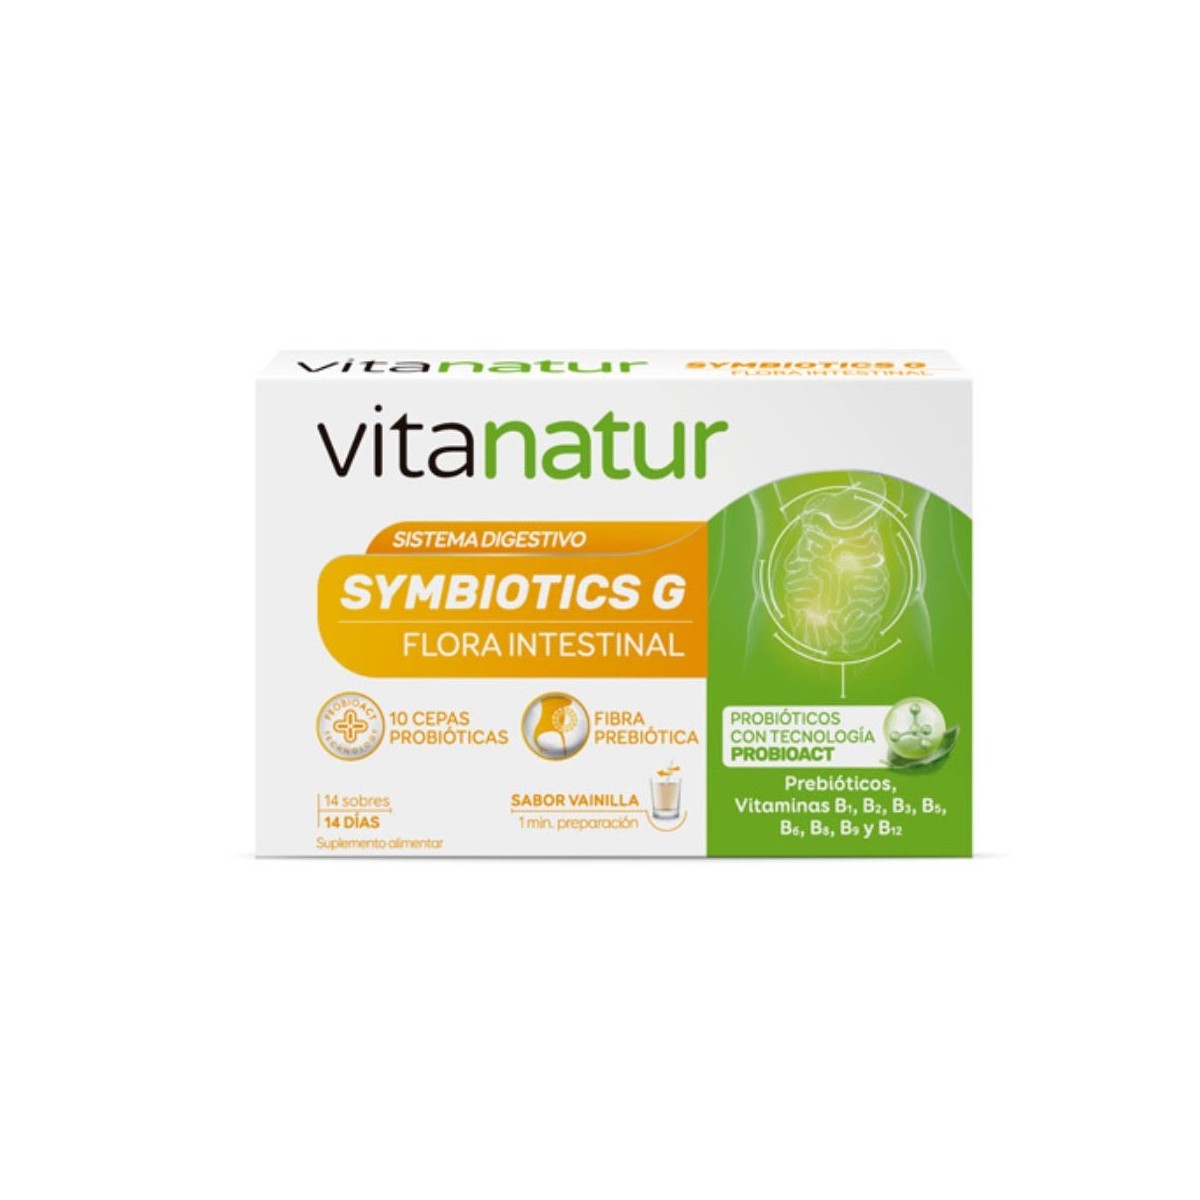 vitanatur-simbiotics-g-14-sobres